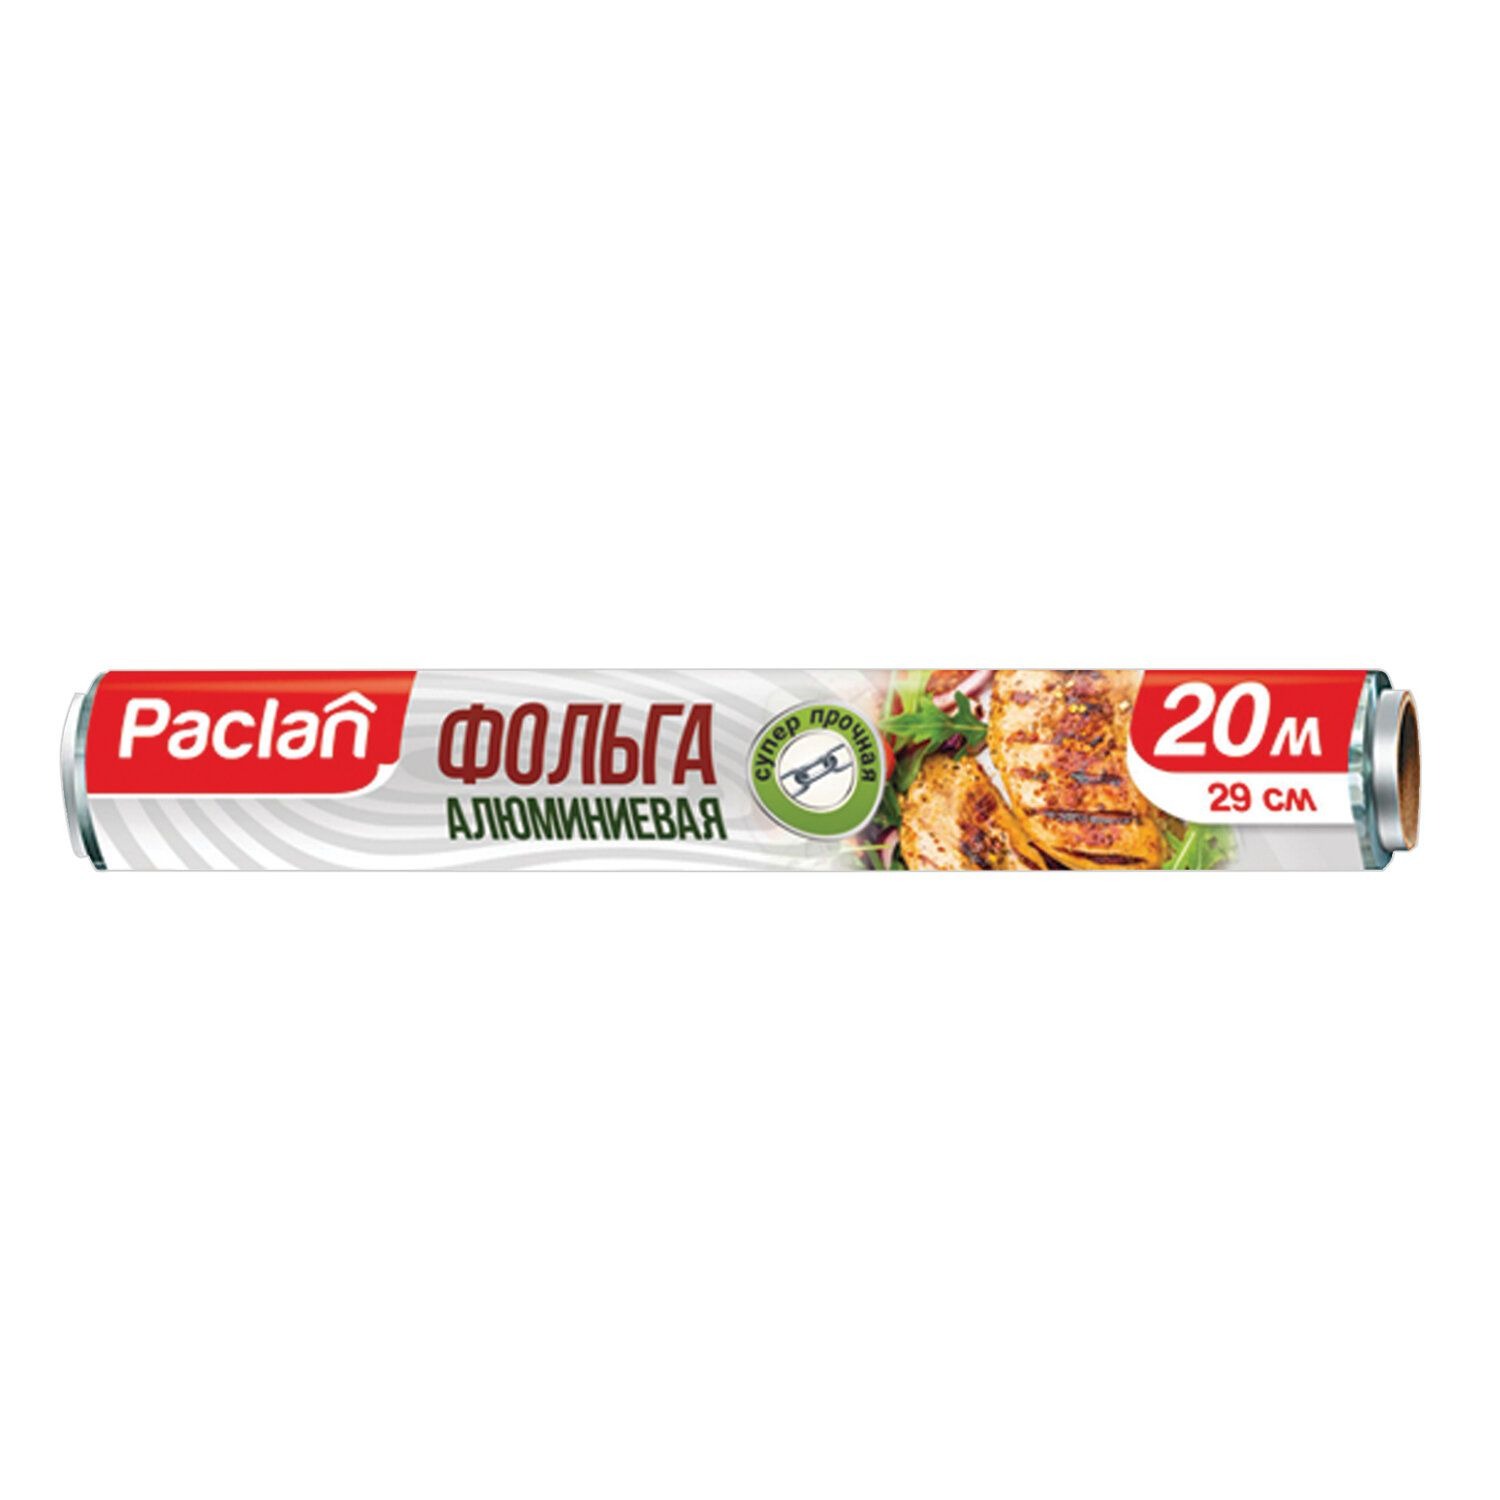 Фольга алюминевая Paclan 20м х 29 см фольга алюминевая paclan 20м х 29 см